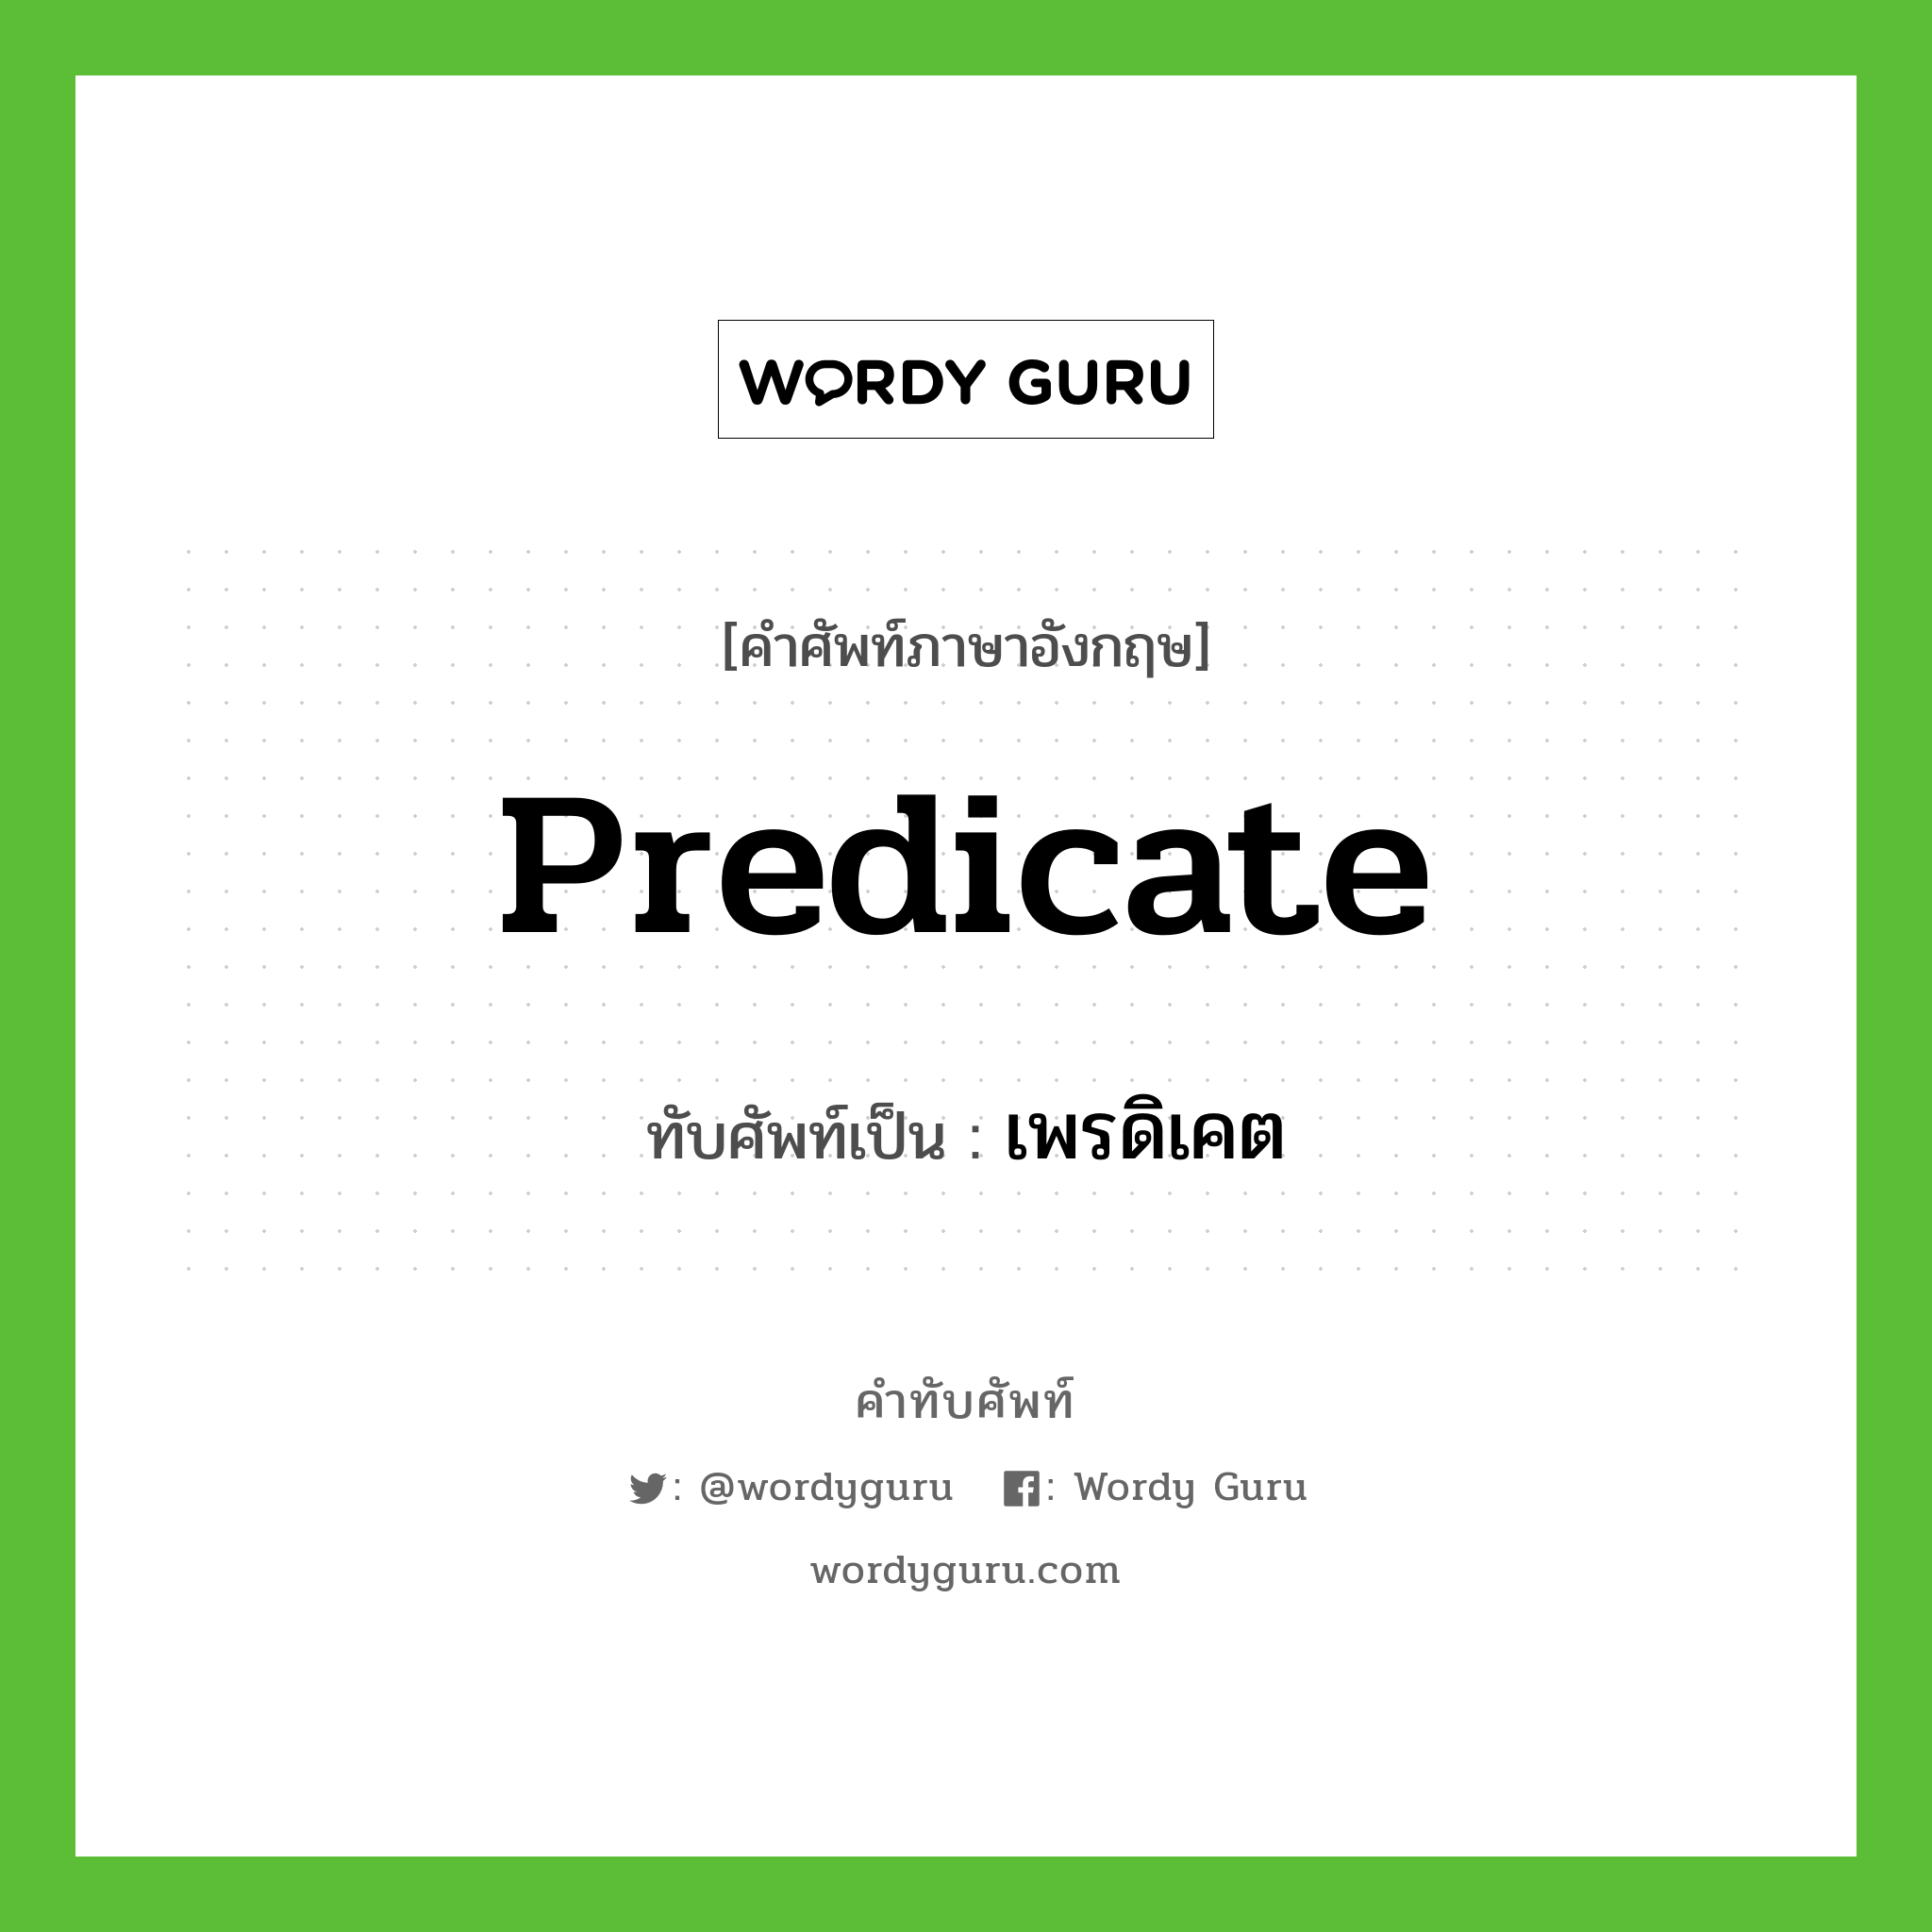 predicate เขียนเป็นคำไทยว่าอะไร?, คำศัพท์ภาษาอังกฤษ predicate ทับศัพท์เป็น เพรดิเคต